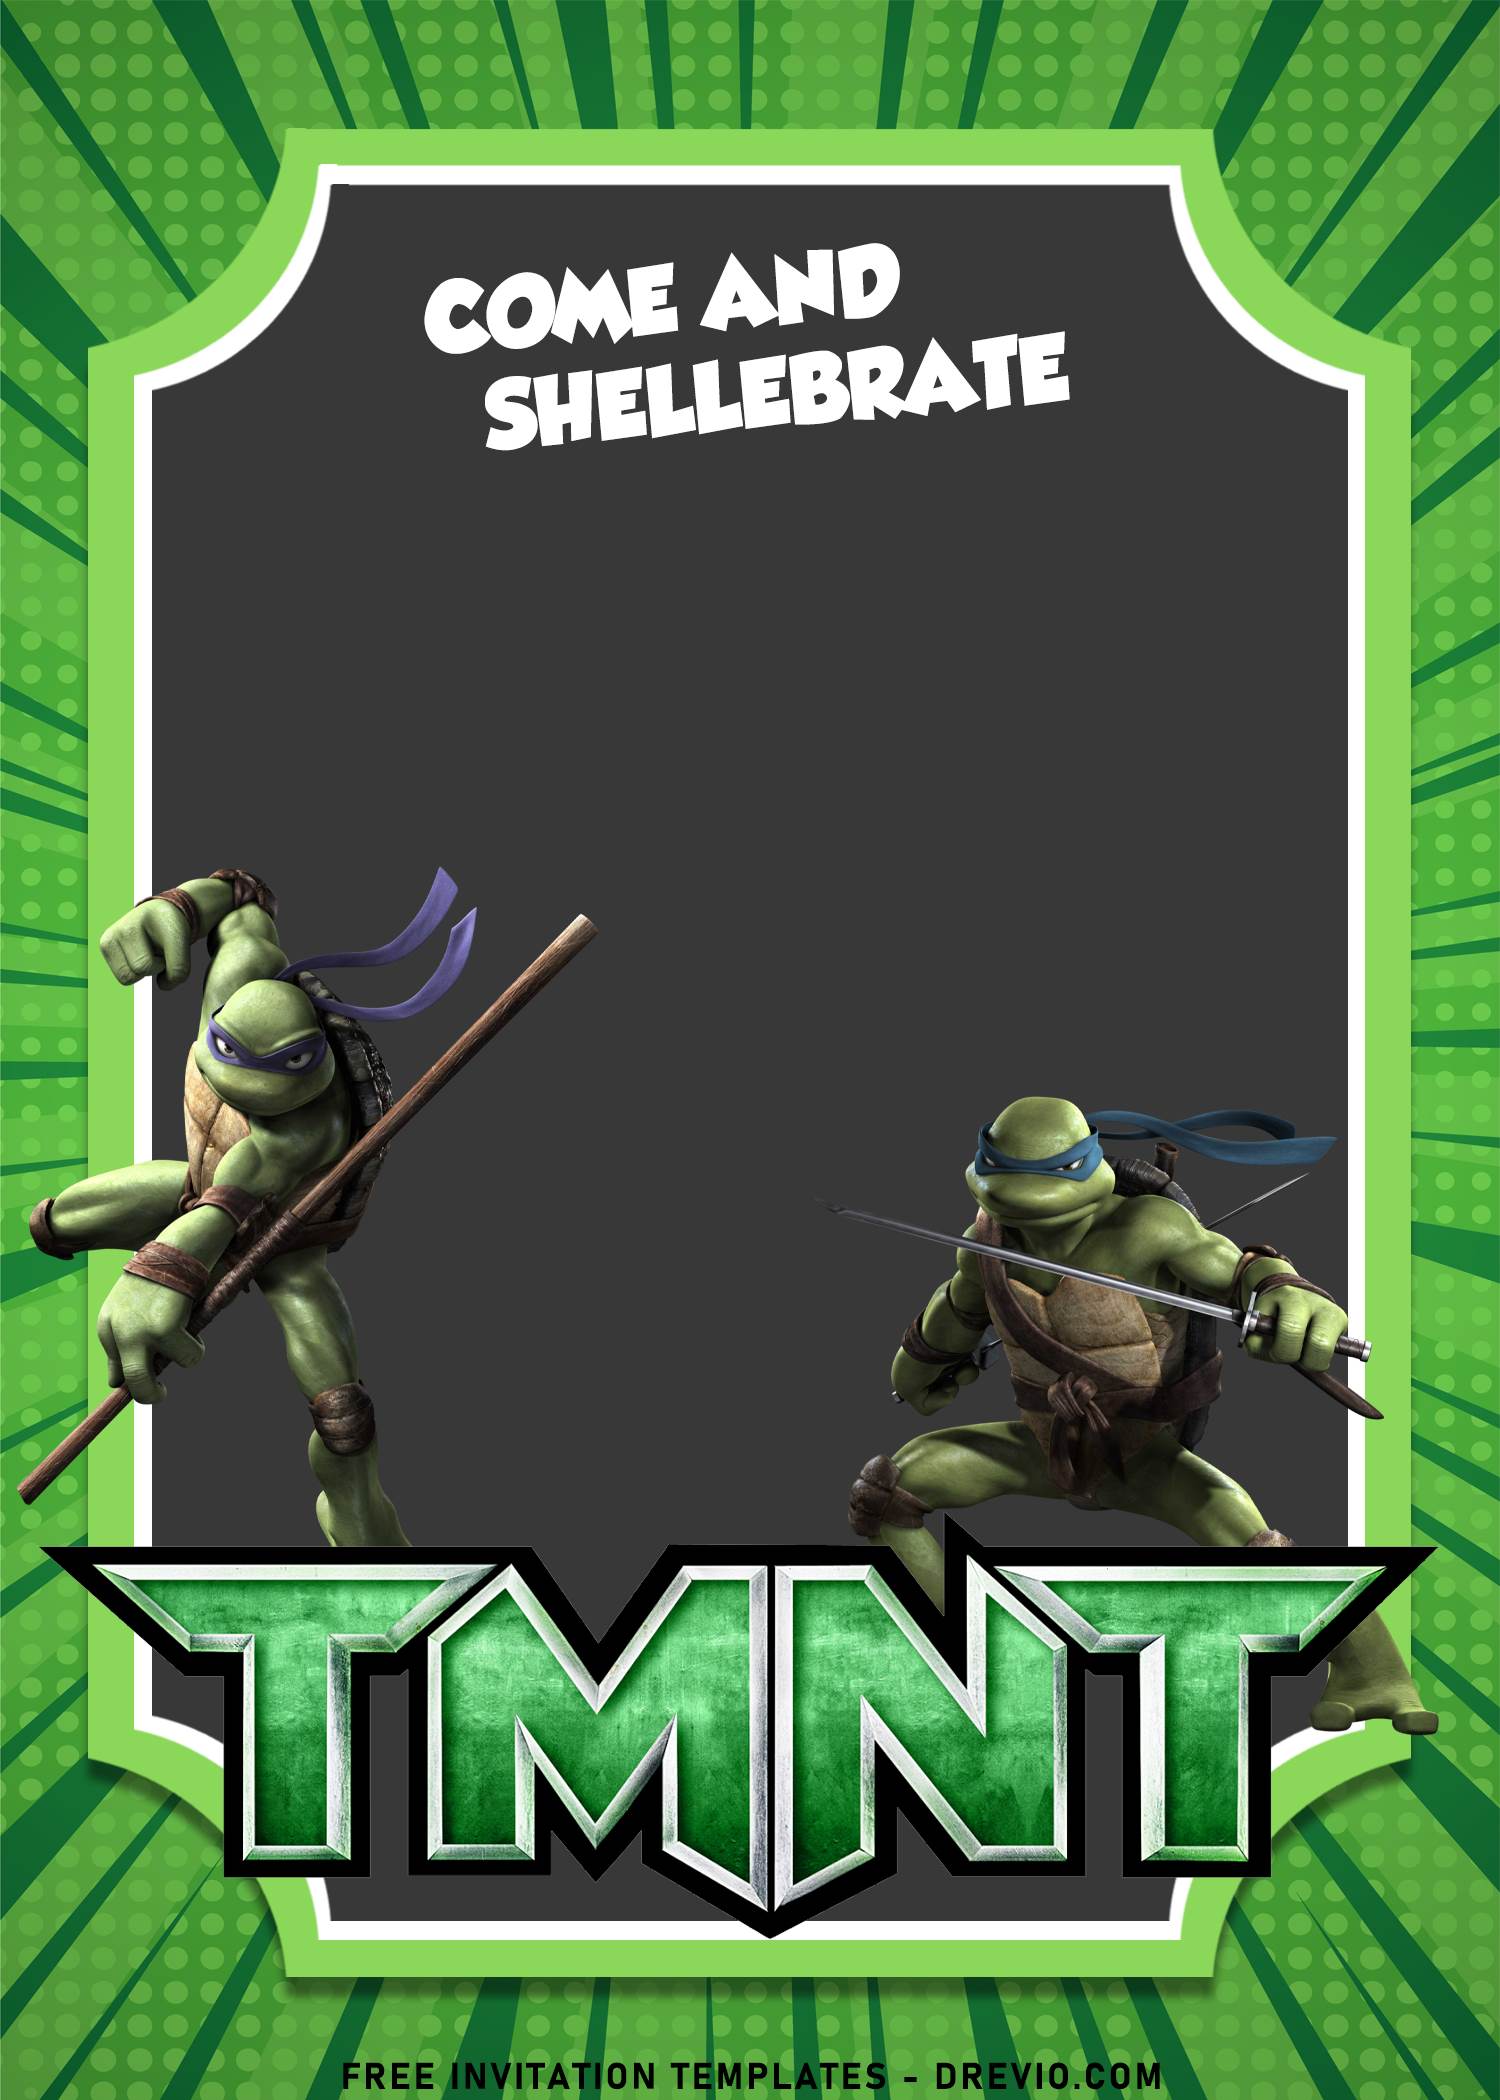 10+ Awesome Teenage Mutant Ninja Turtle Birthday Invitation Templates